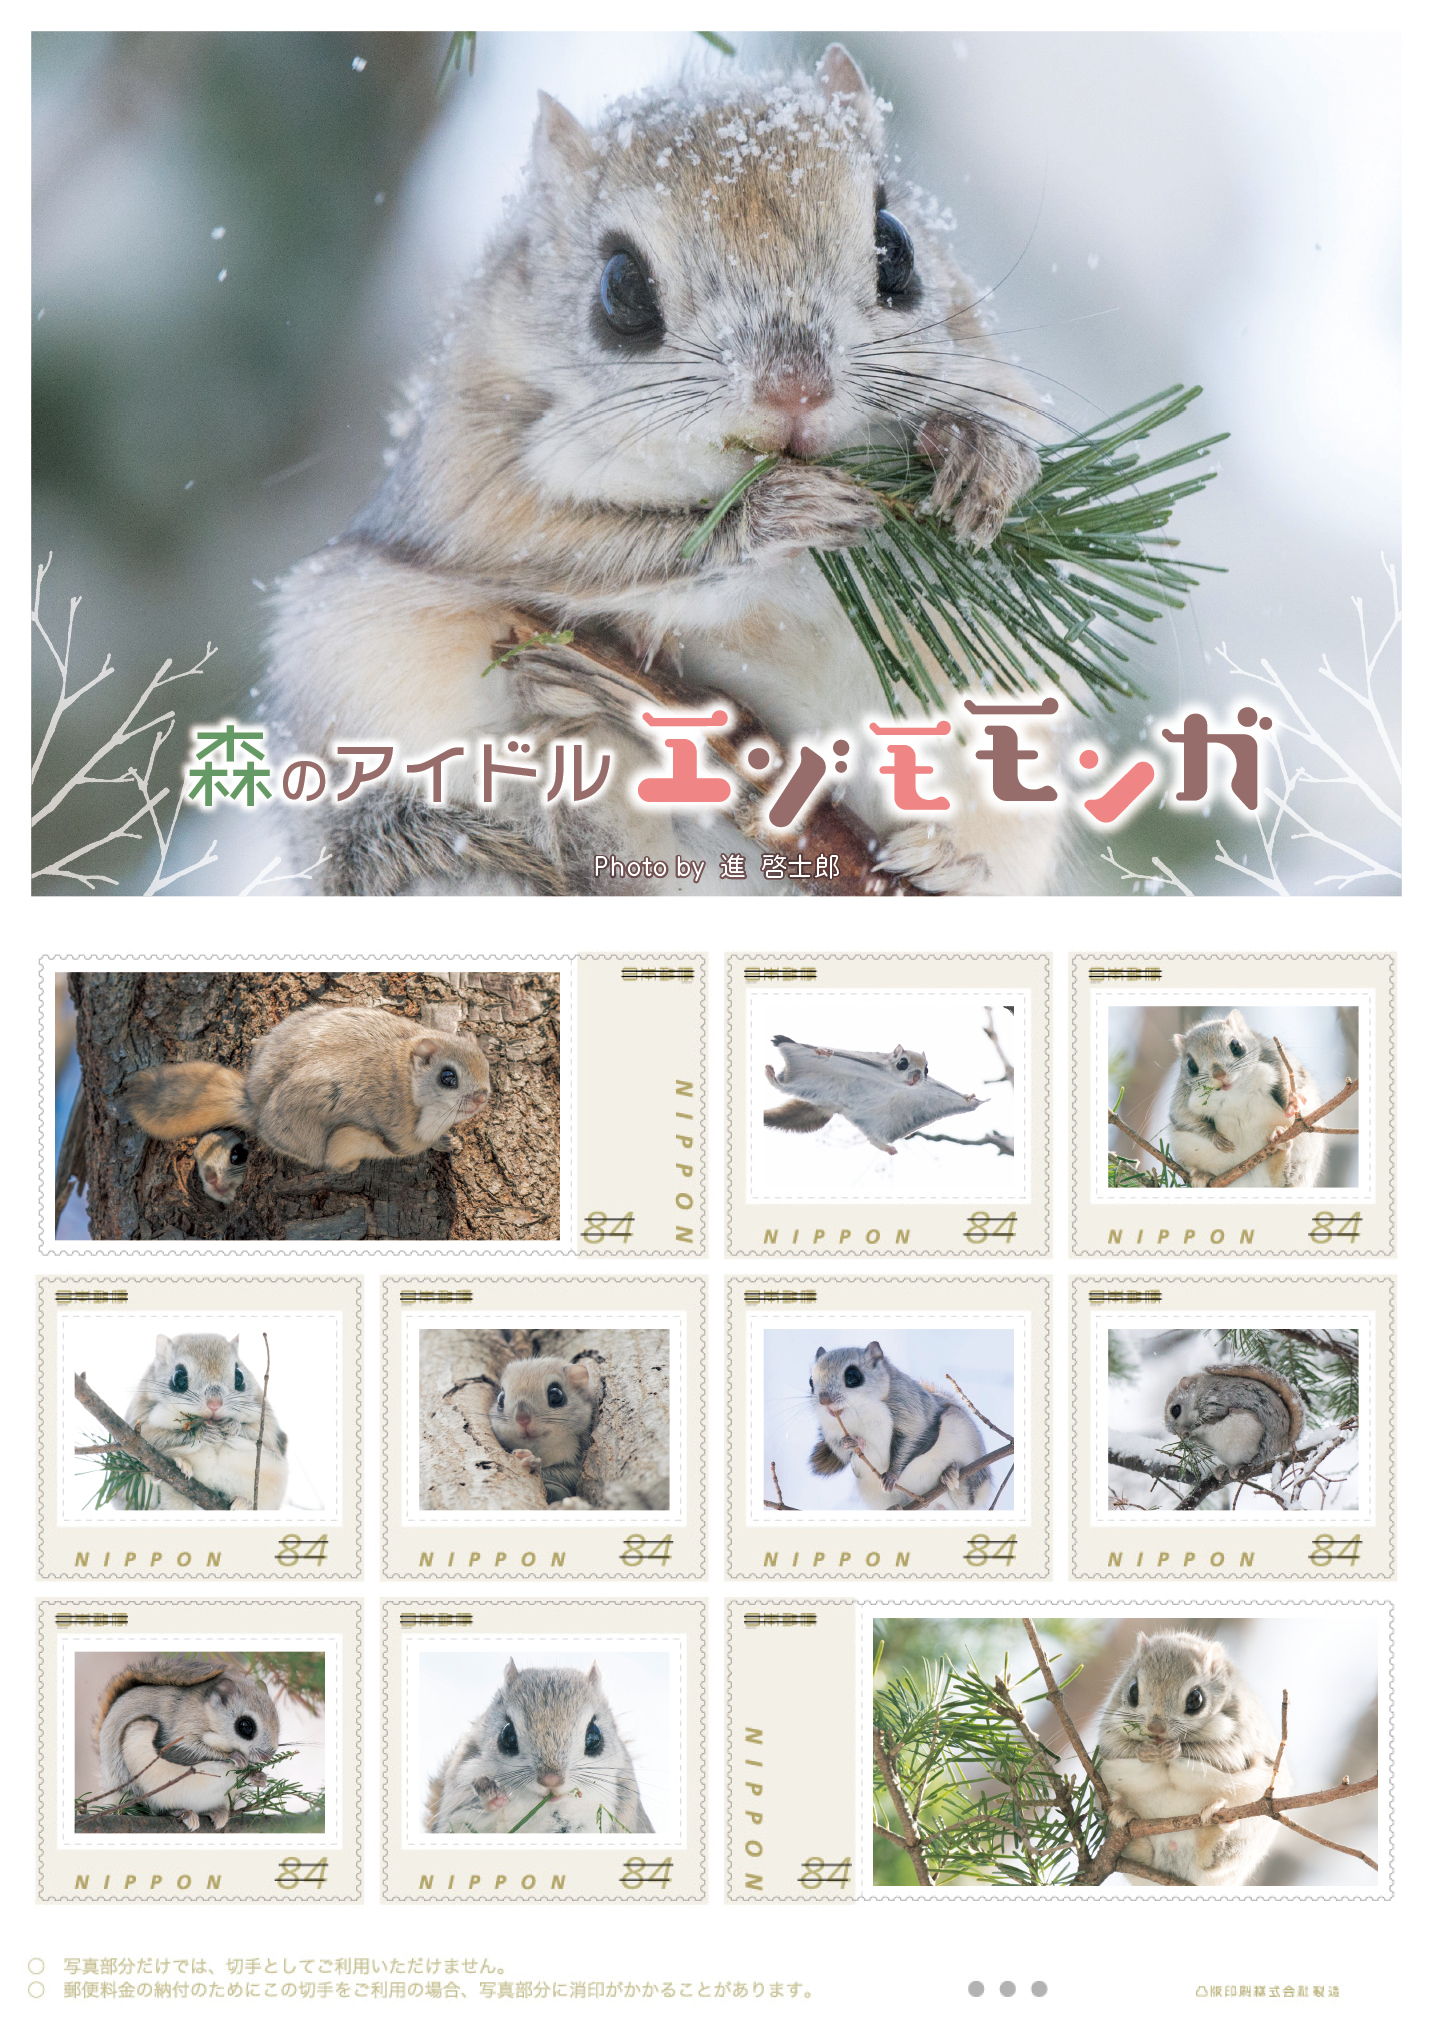 オリジナル フレーム切手 「森のアイドル エゾモモンガ Photo by 進 啓士郎」の販売開始